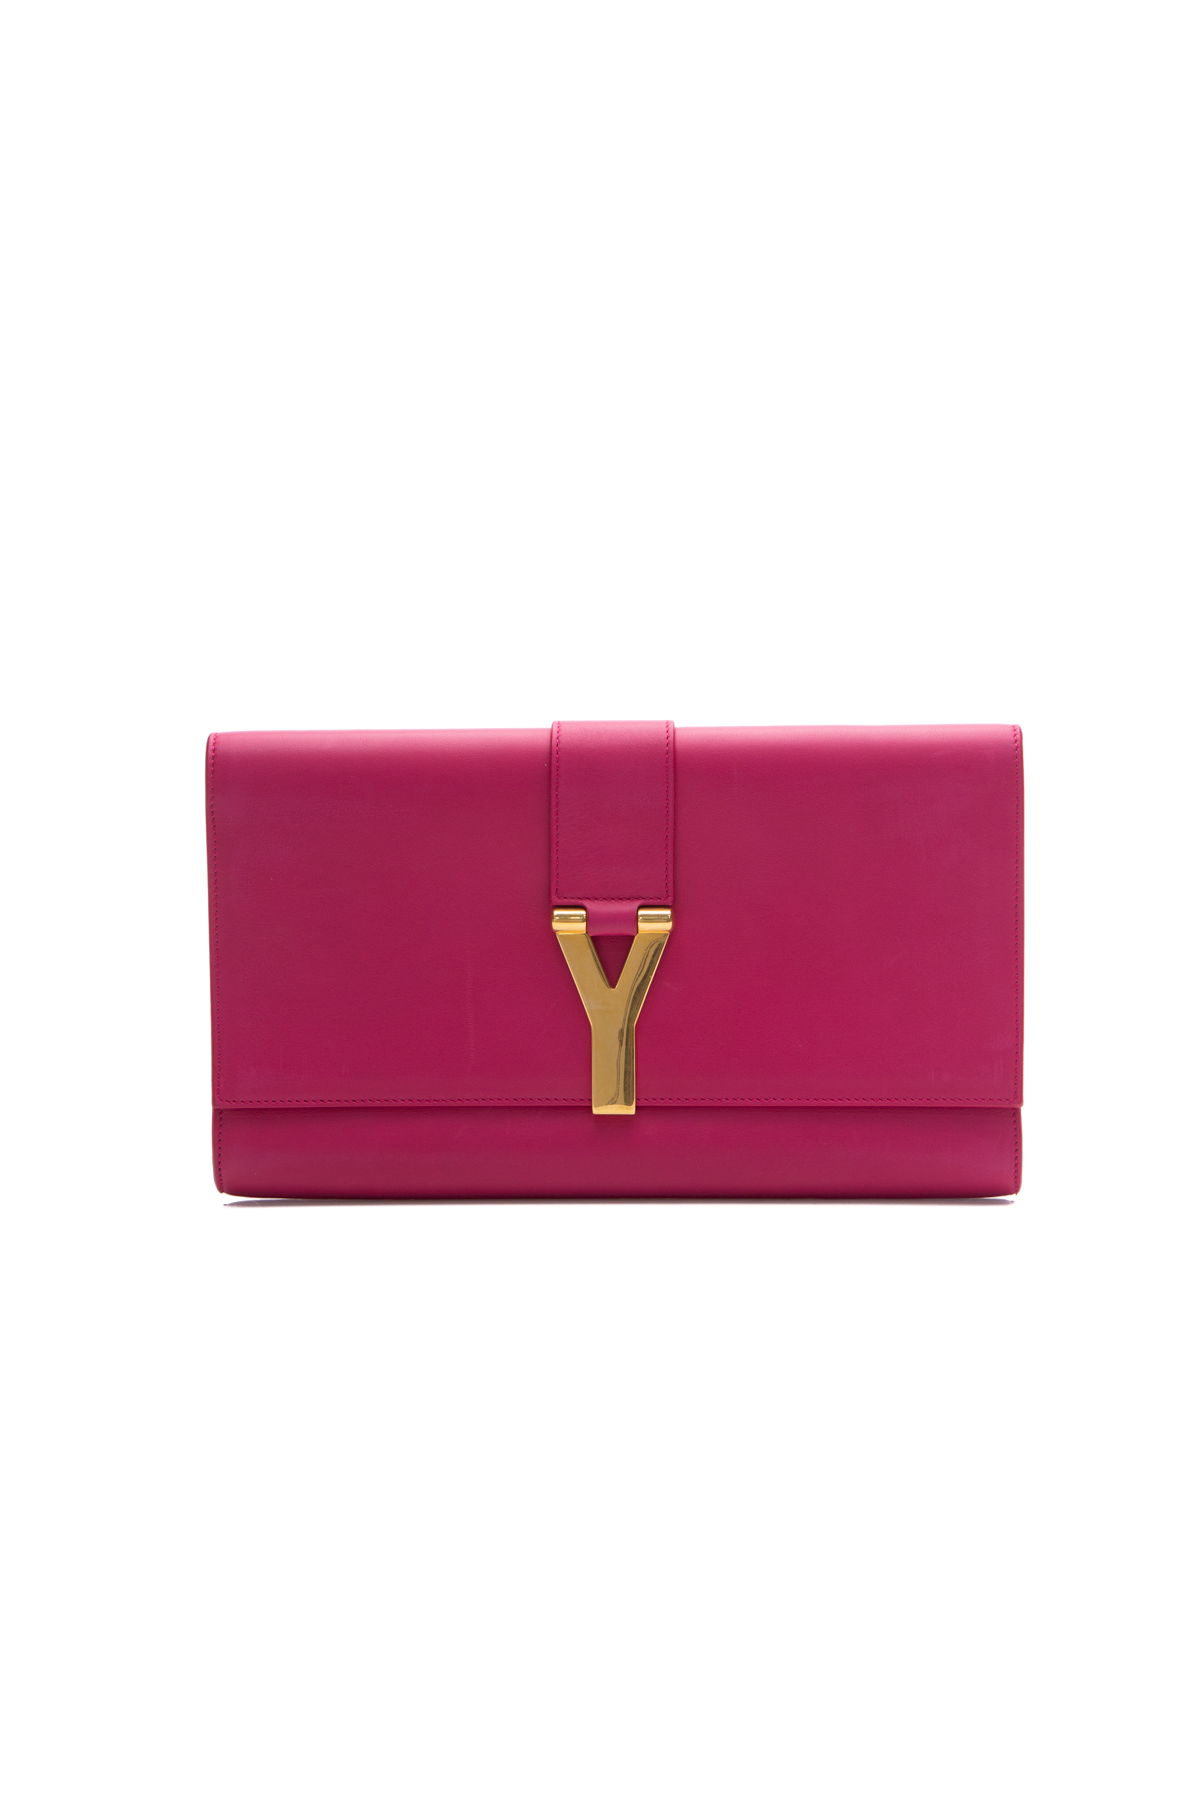 Saint Laurent Handbags for Women | Neiman Marcus